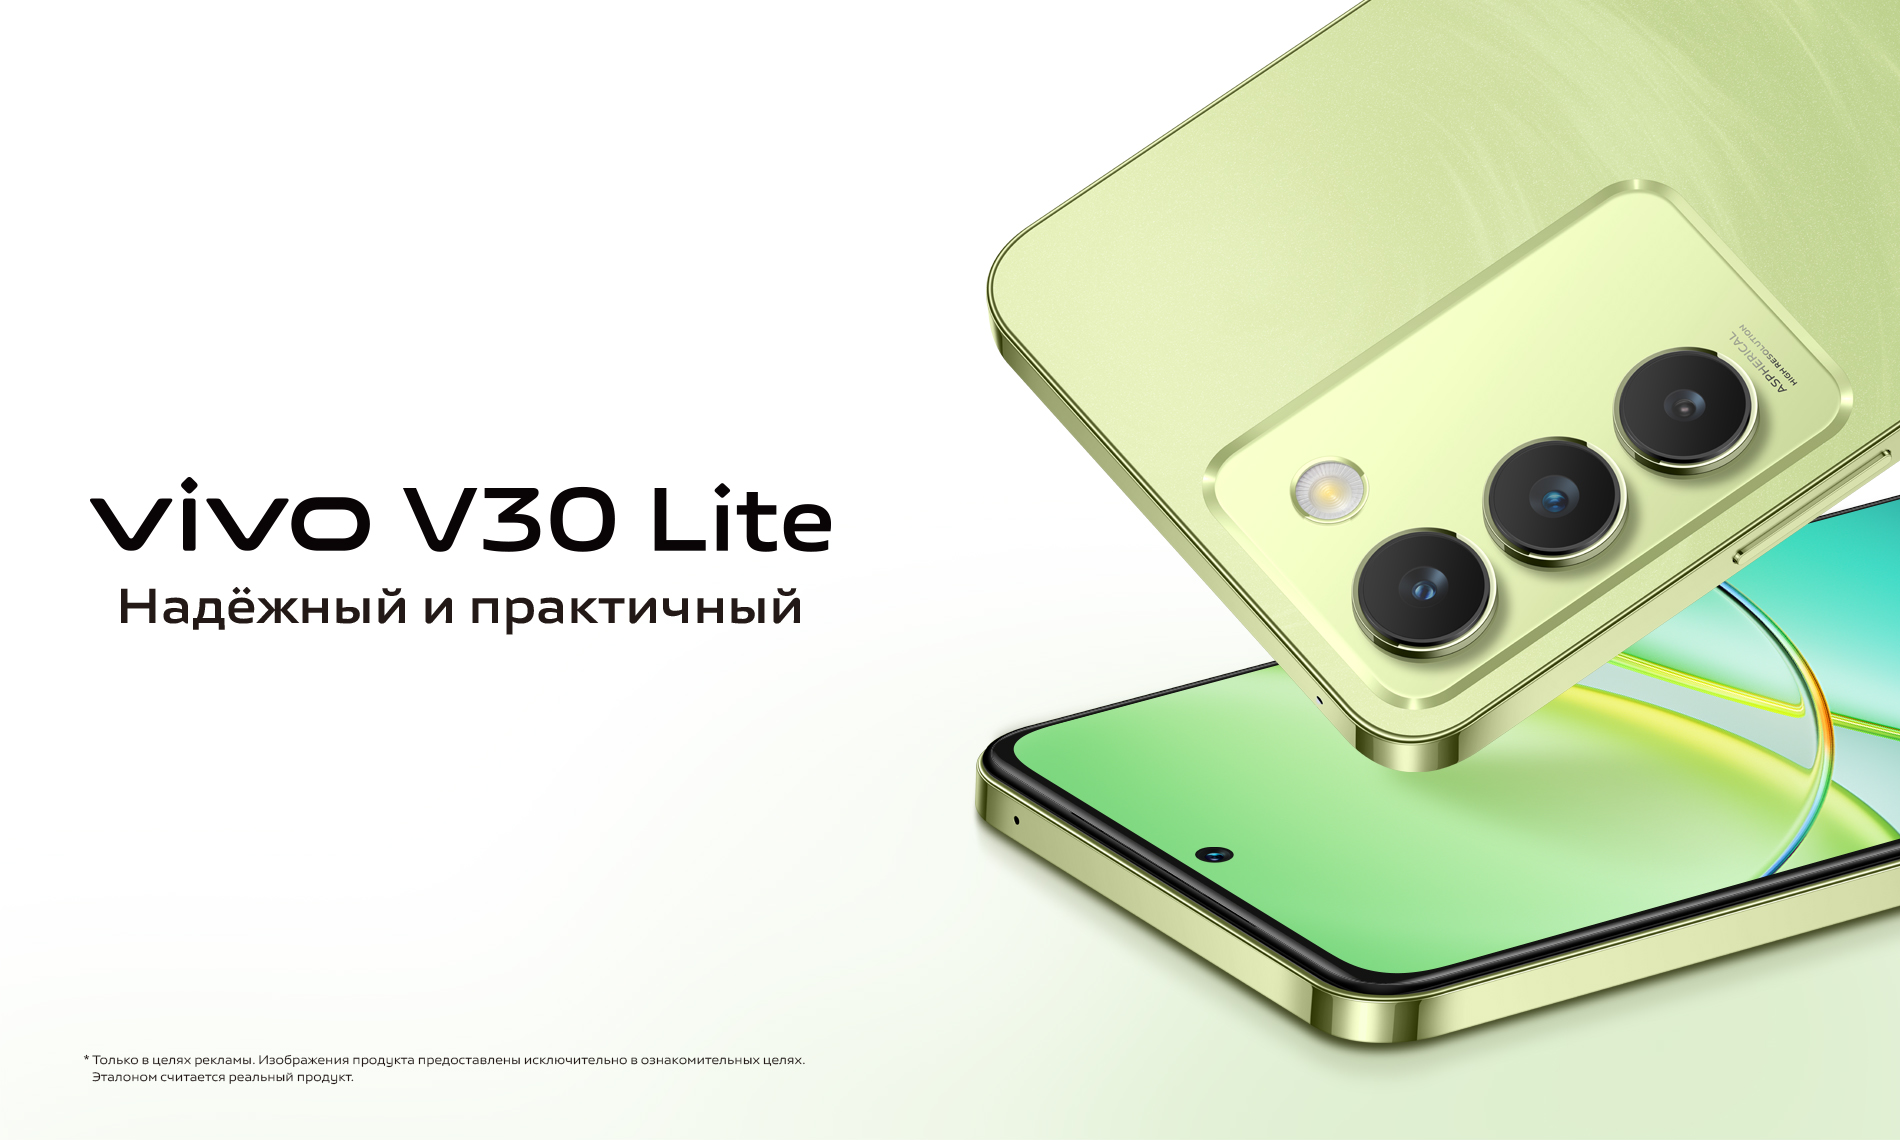 vivo представляет новую модель V30 Lite в России по специальной цене